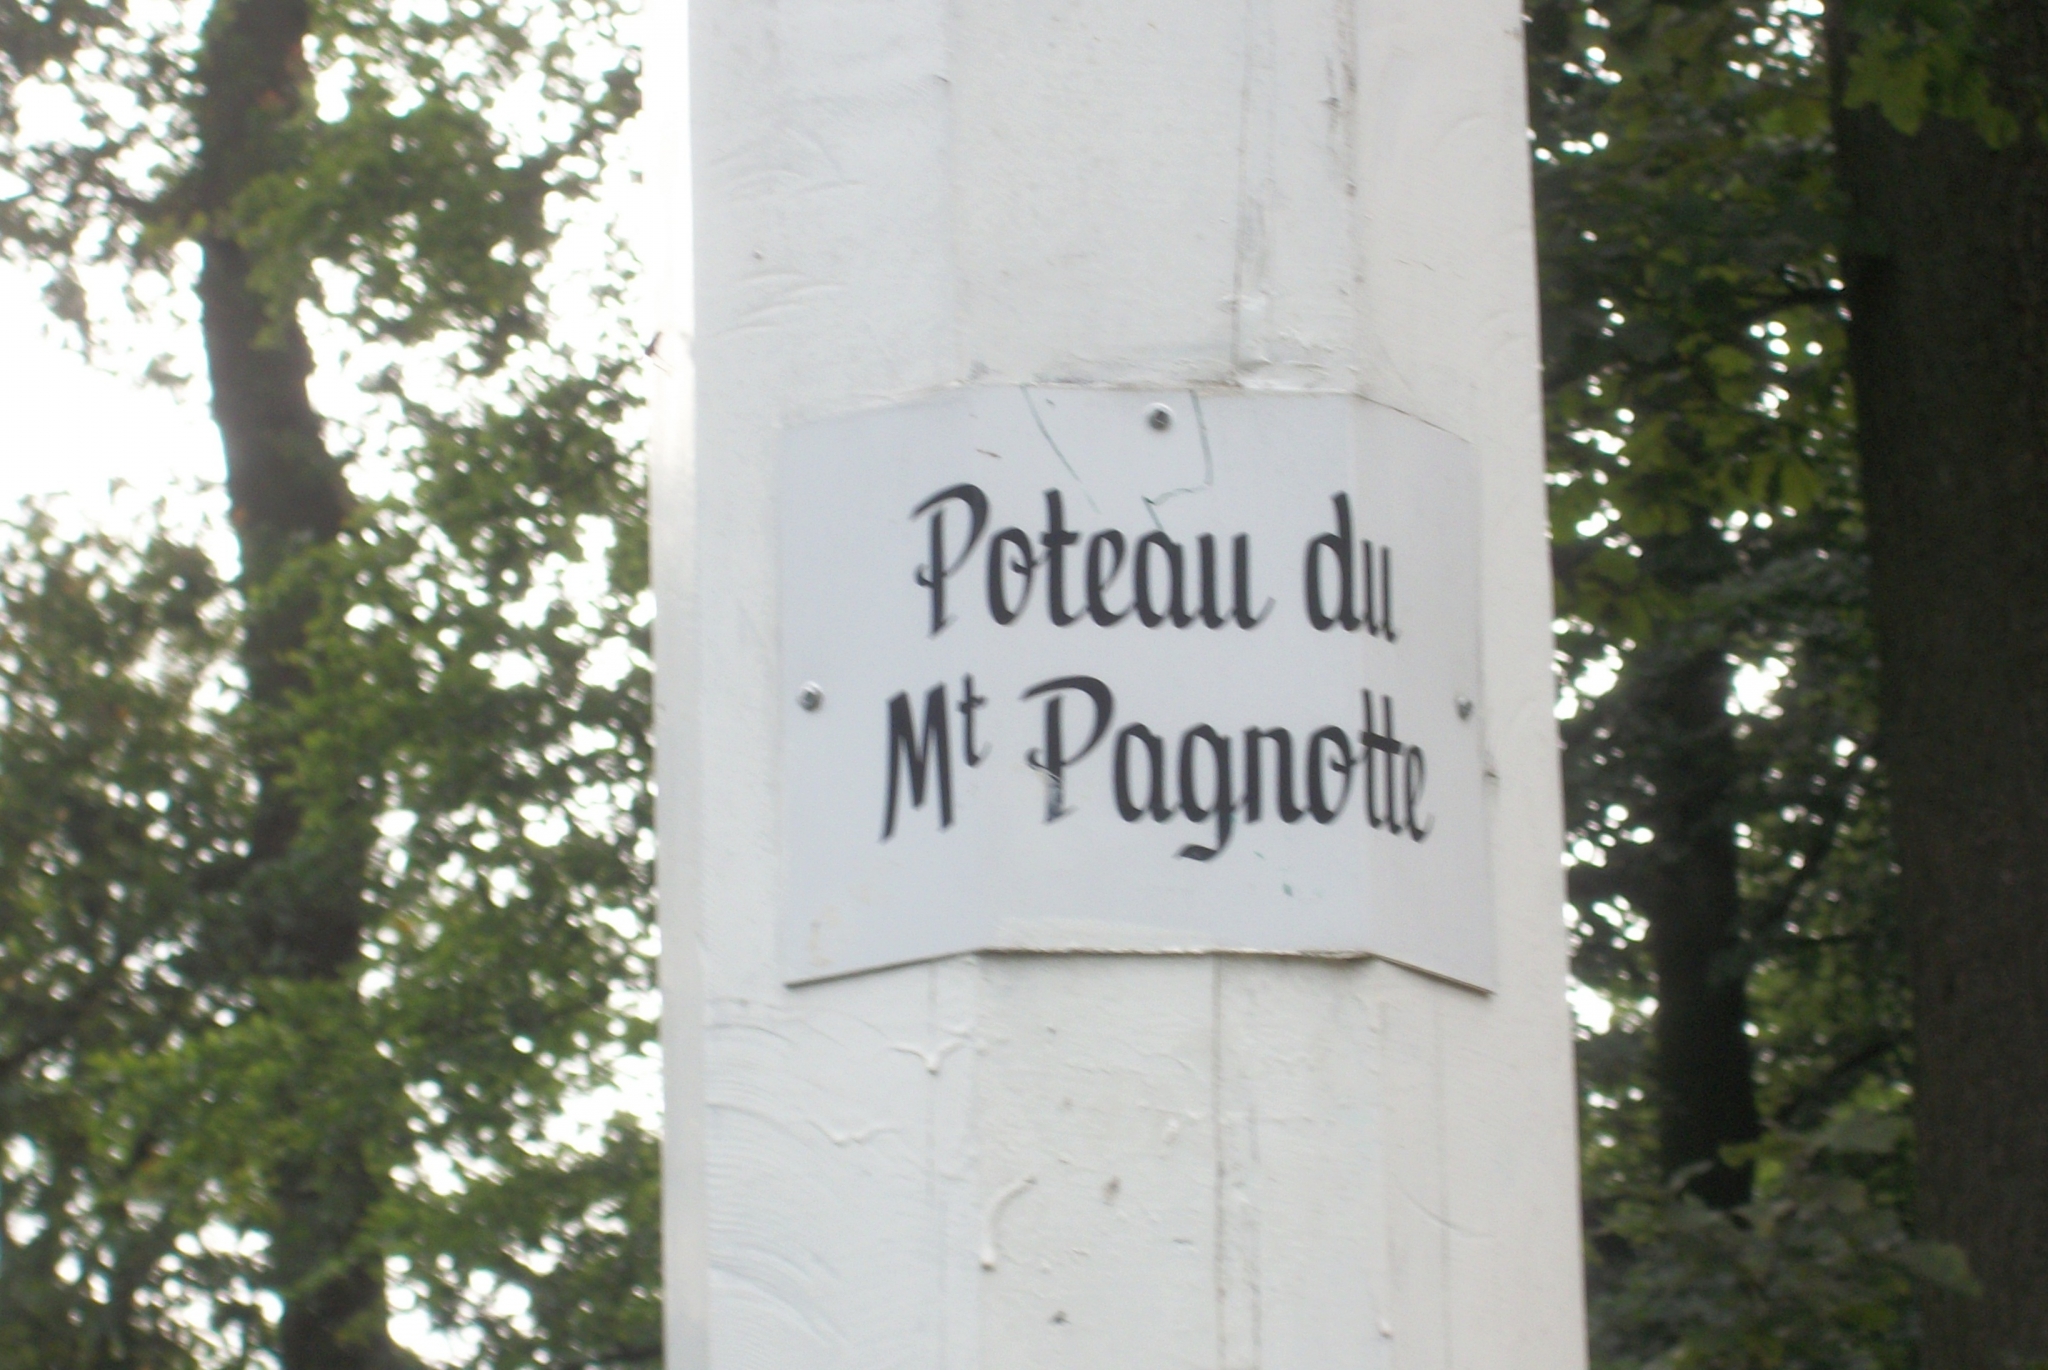 Le-Mont-Pagnotte-le-7-aout-2